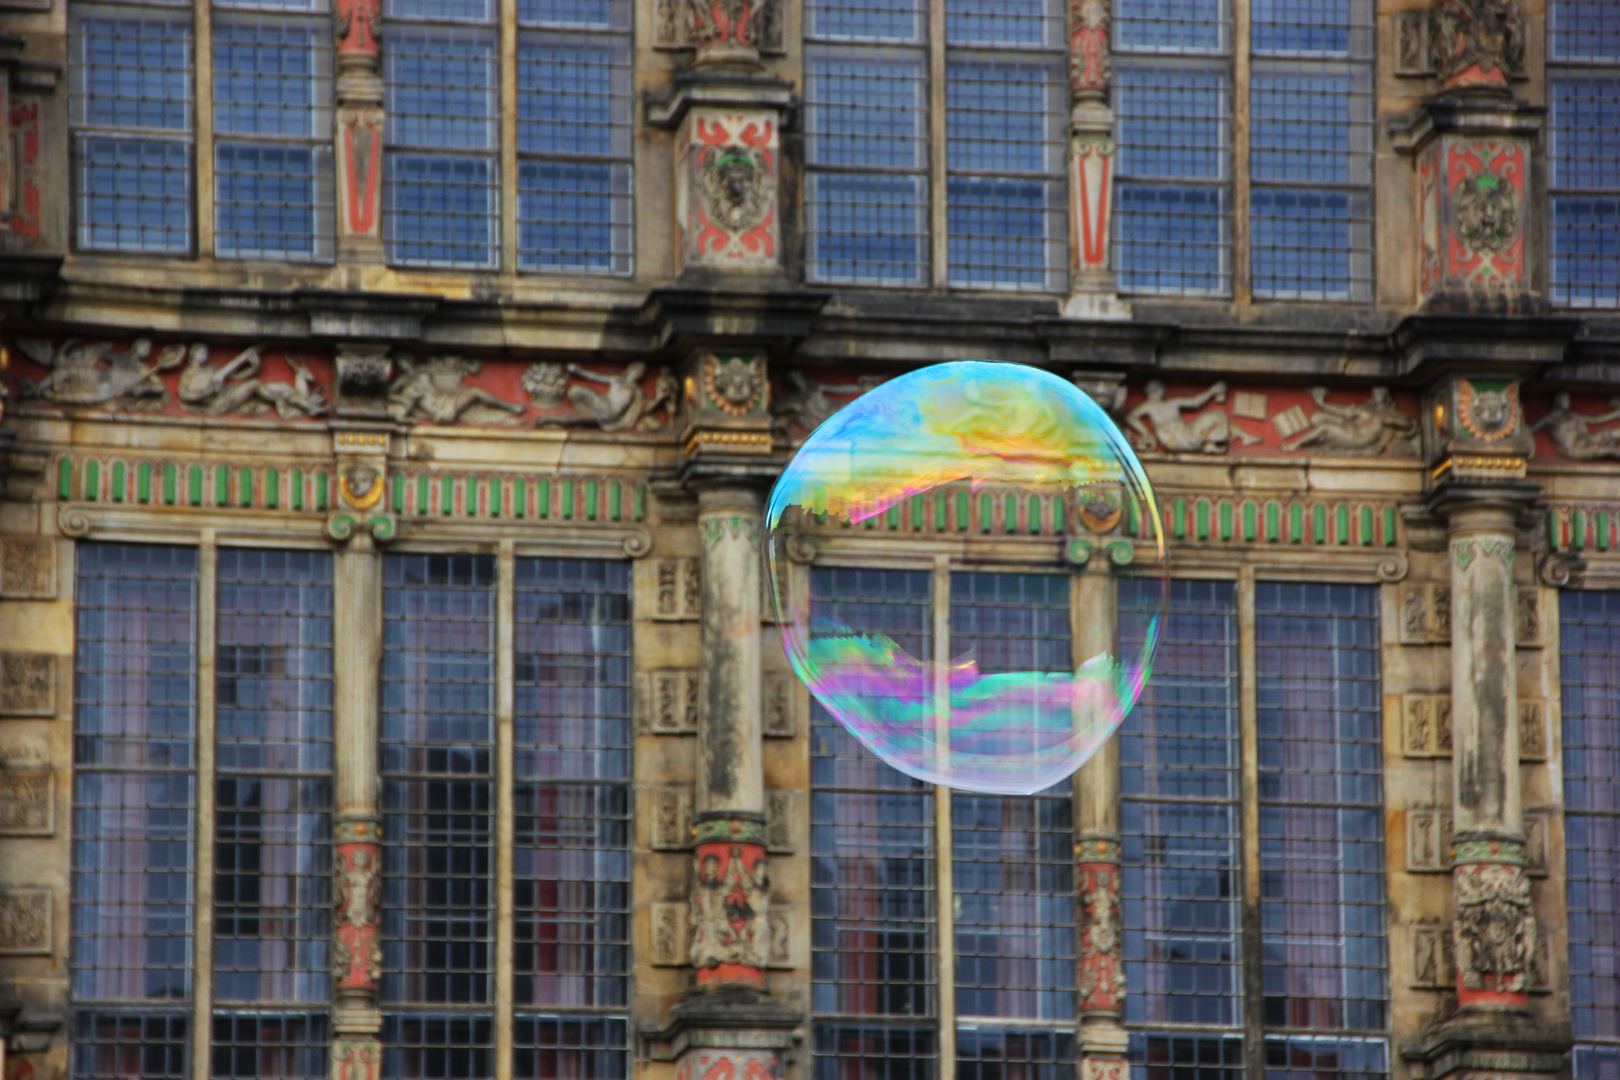 bubble life or glass facade